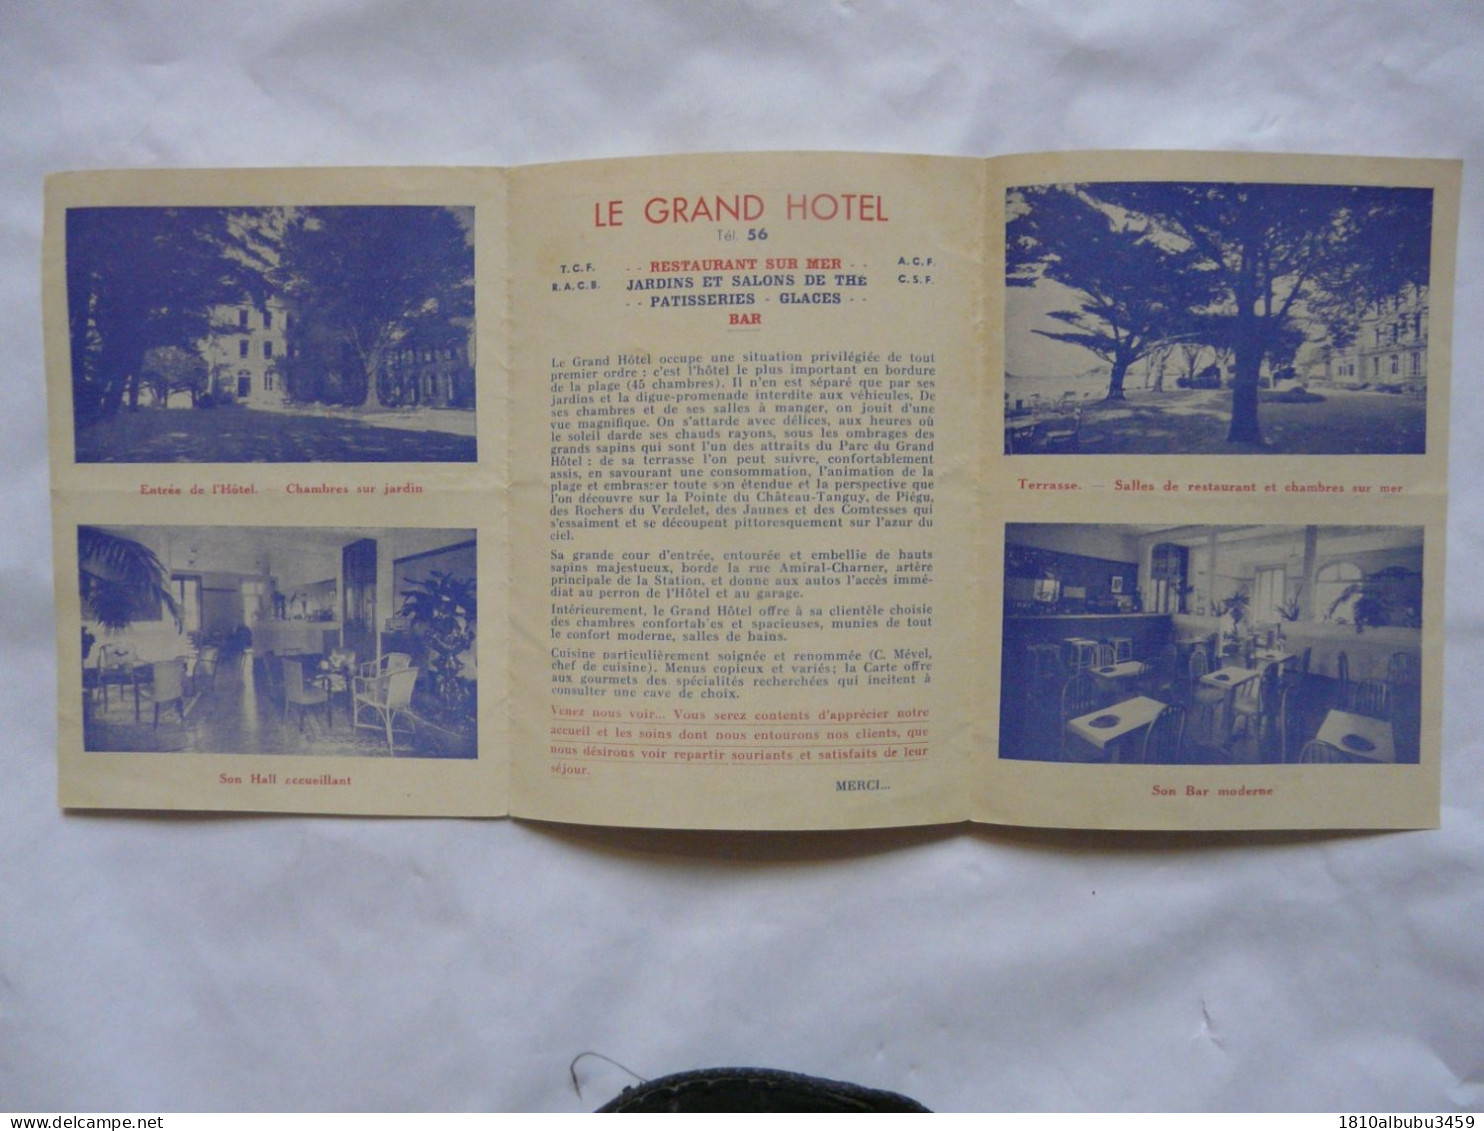 VIEUX PAPIERS - DEPLIANT TOURISTIQUE  : LE VAL - ANDRE - Le Grand Hôtel - Dépliants Touristiques